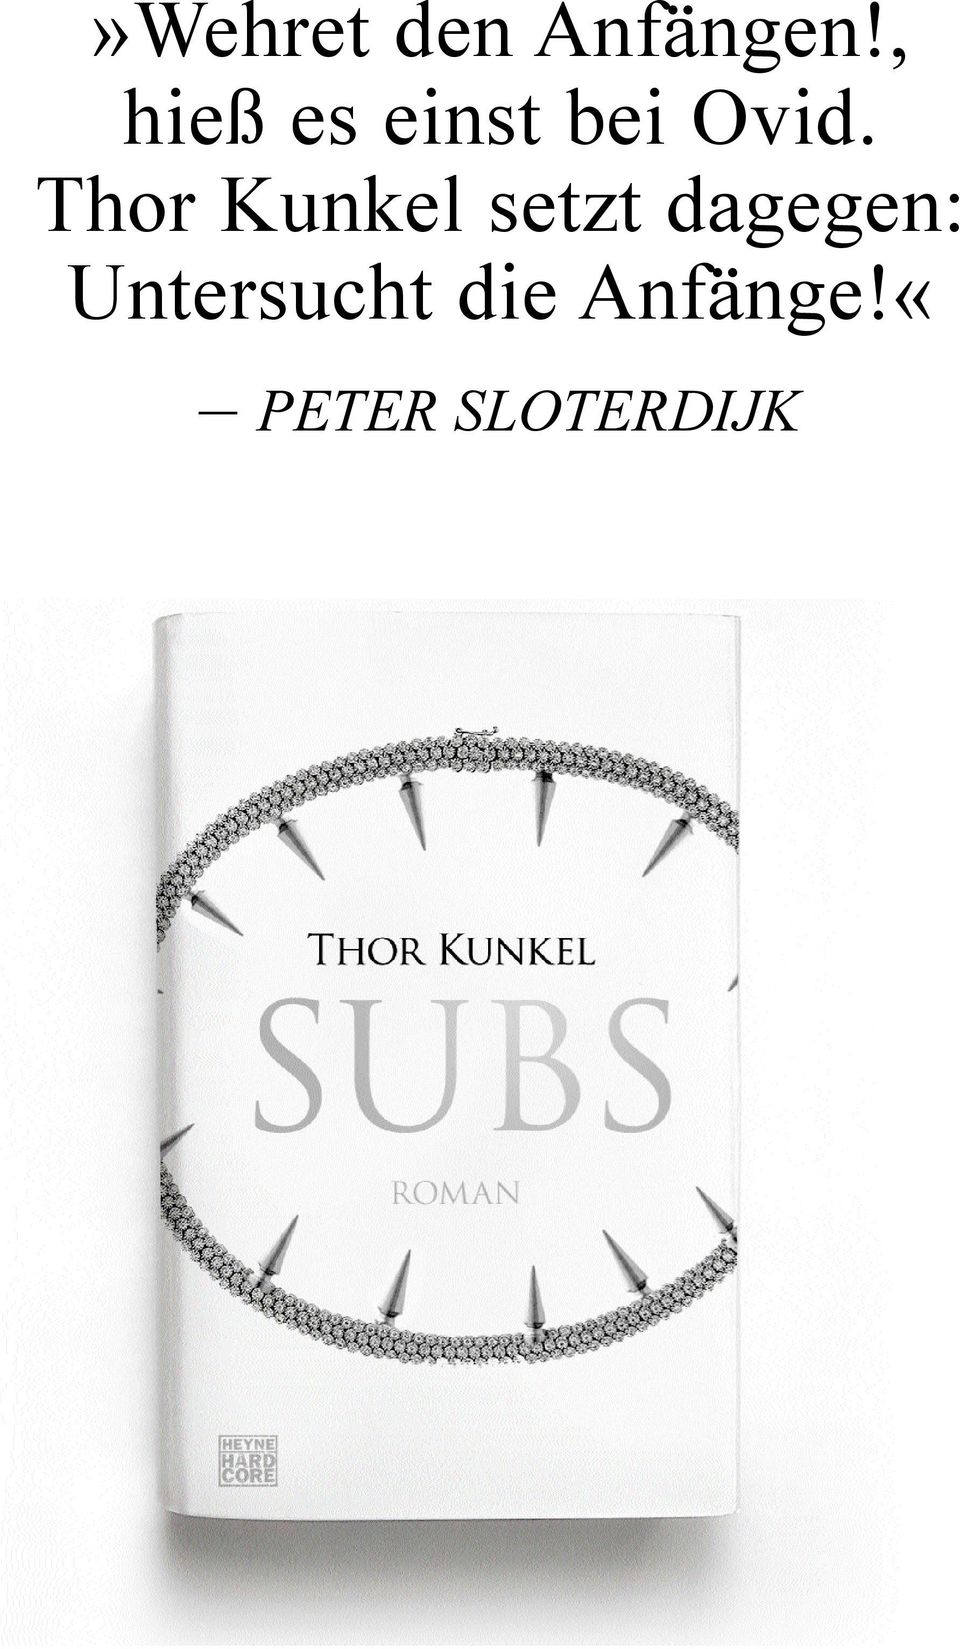 Thor Kunkel setzt dagegen: